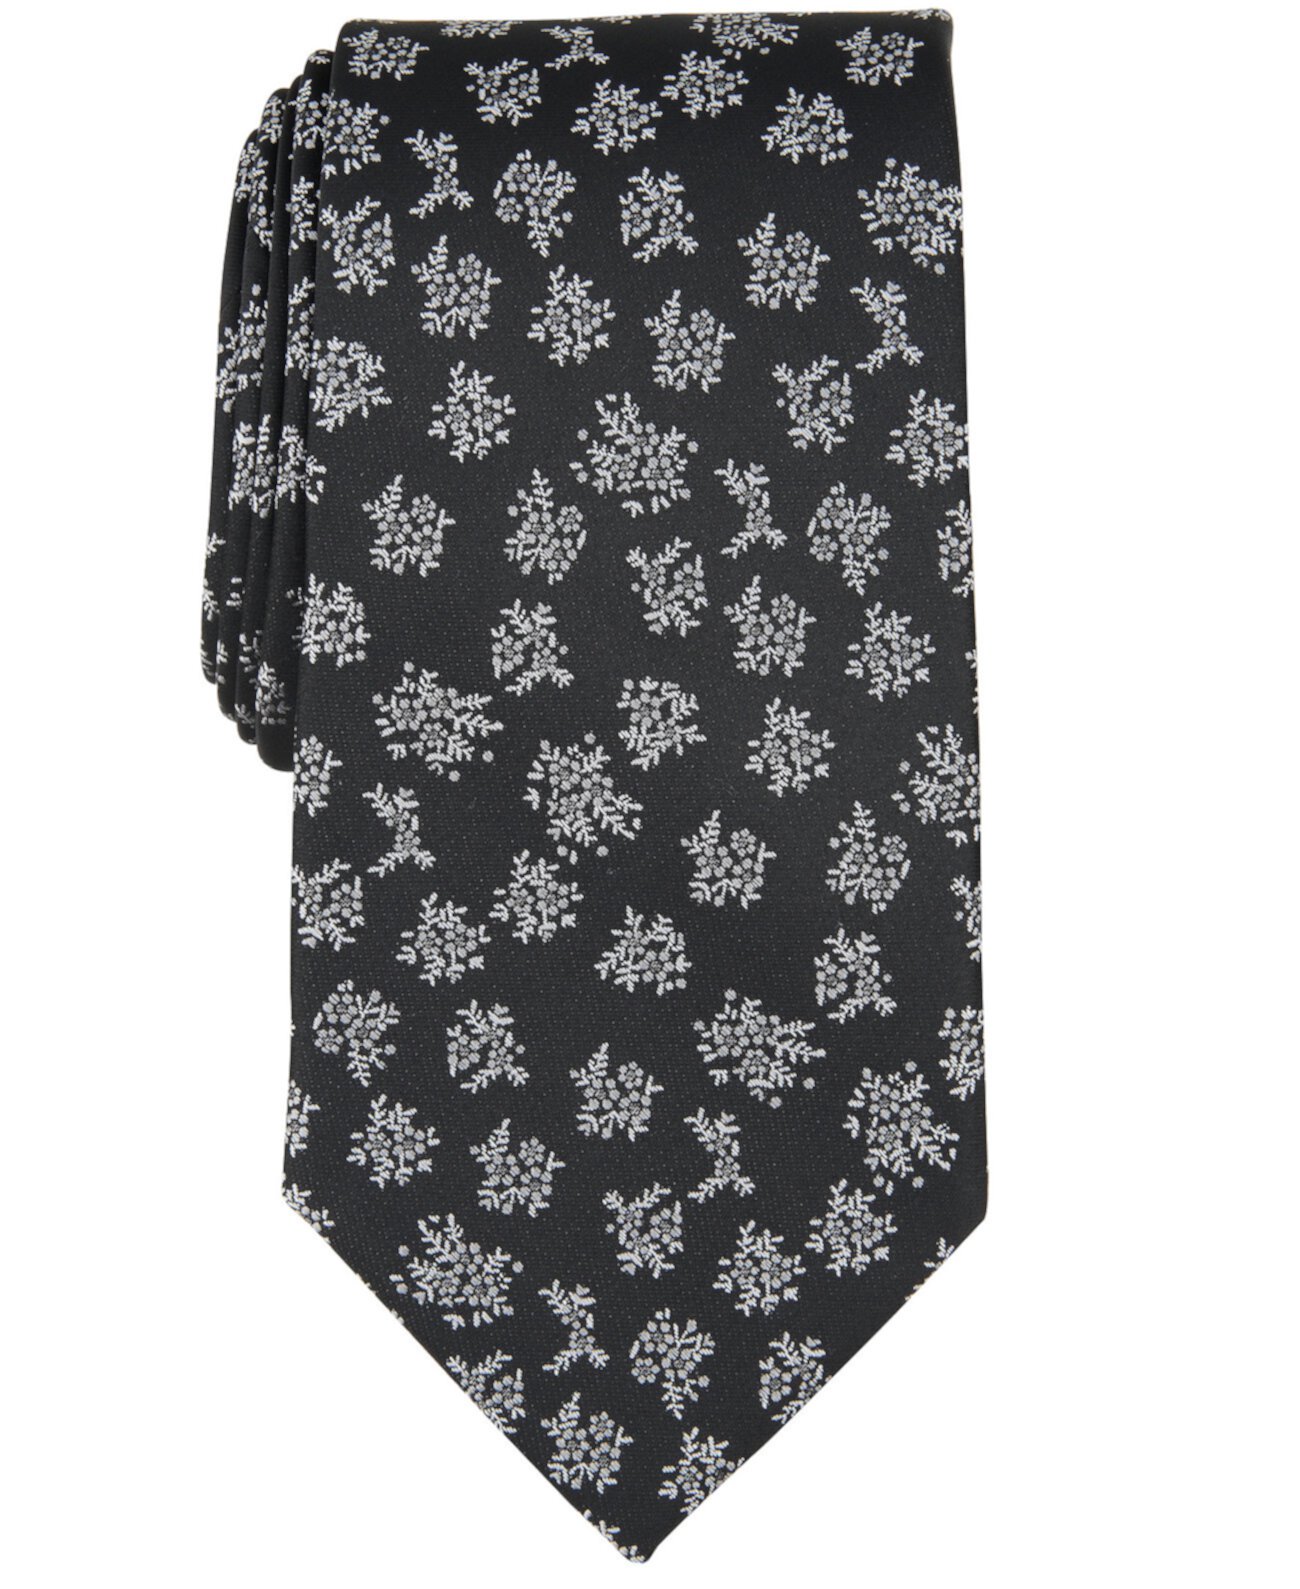 Мужской галстук с цветочным принтом Edessa Michael Kors